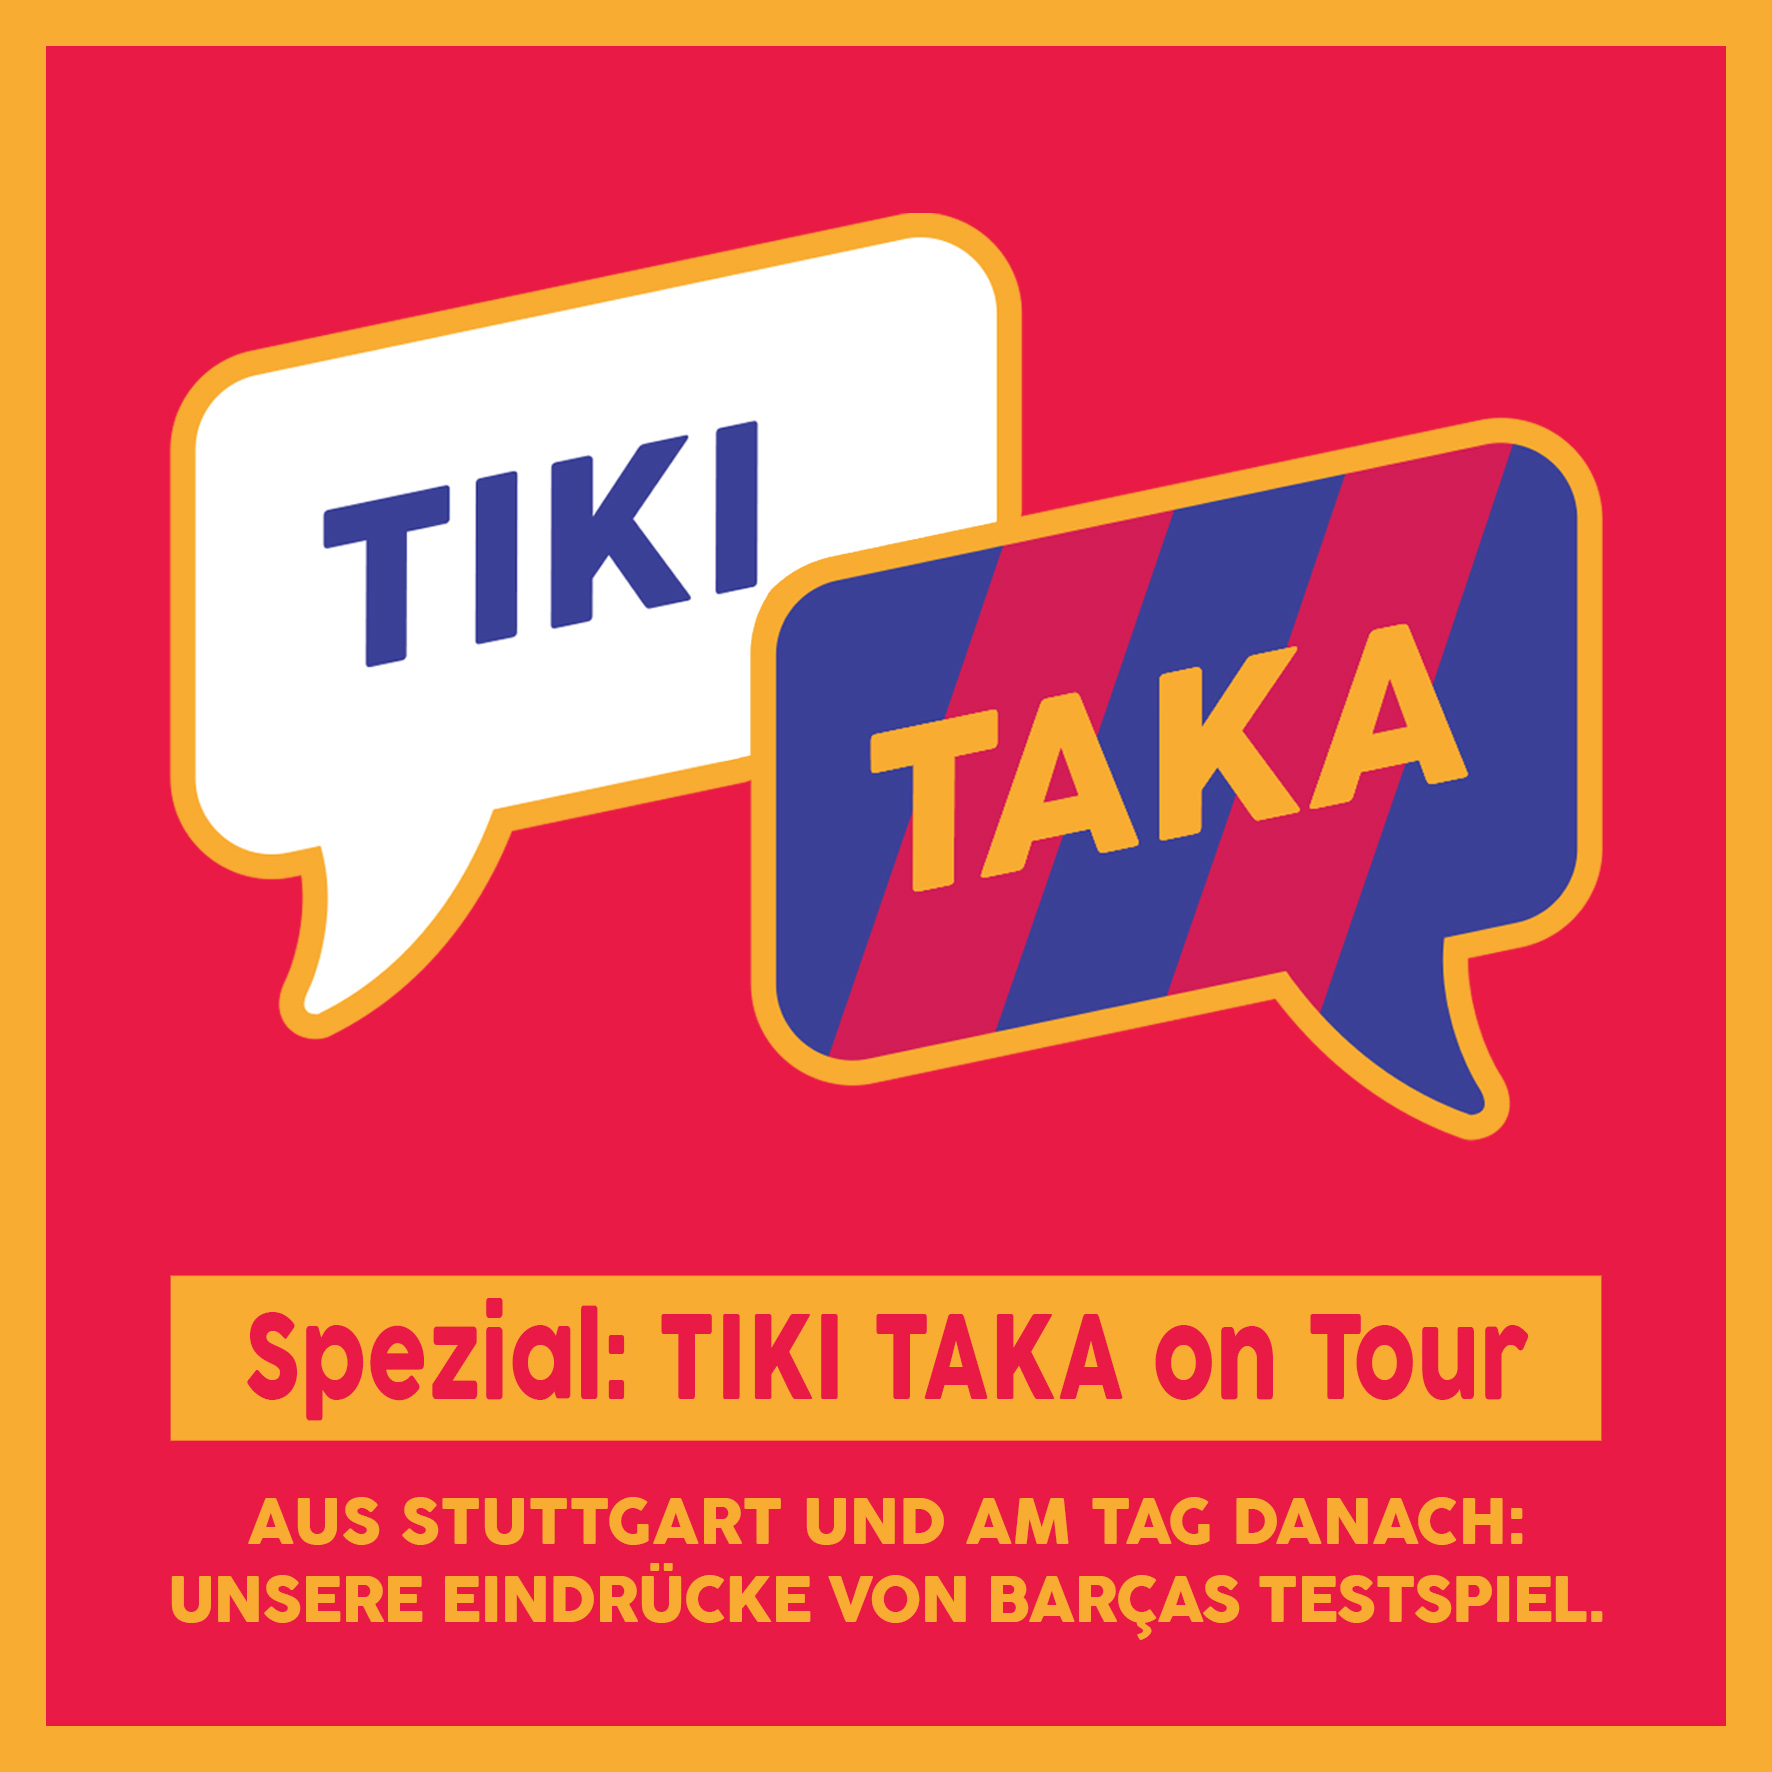 TIKI TAKA on Tour: Unsere Eindrücke von Stuttgart vs Barça